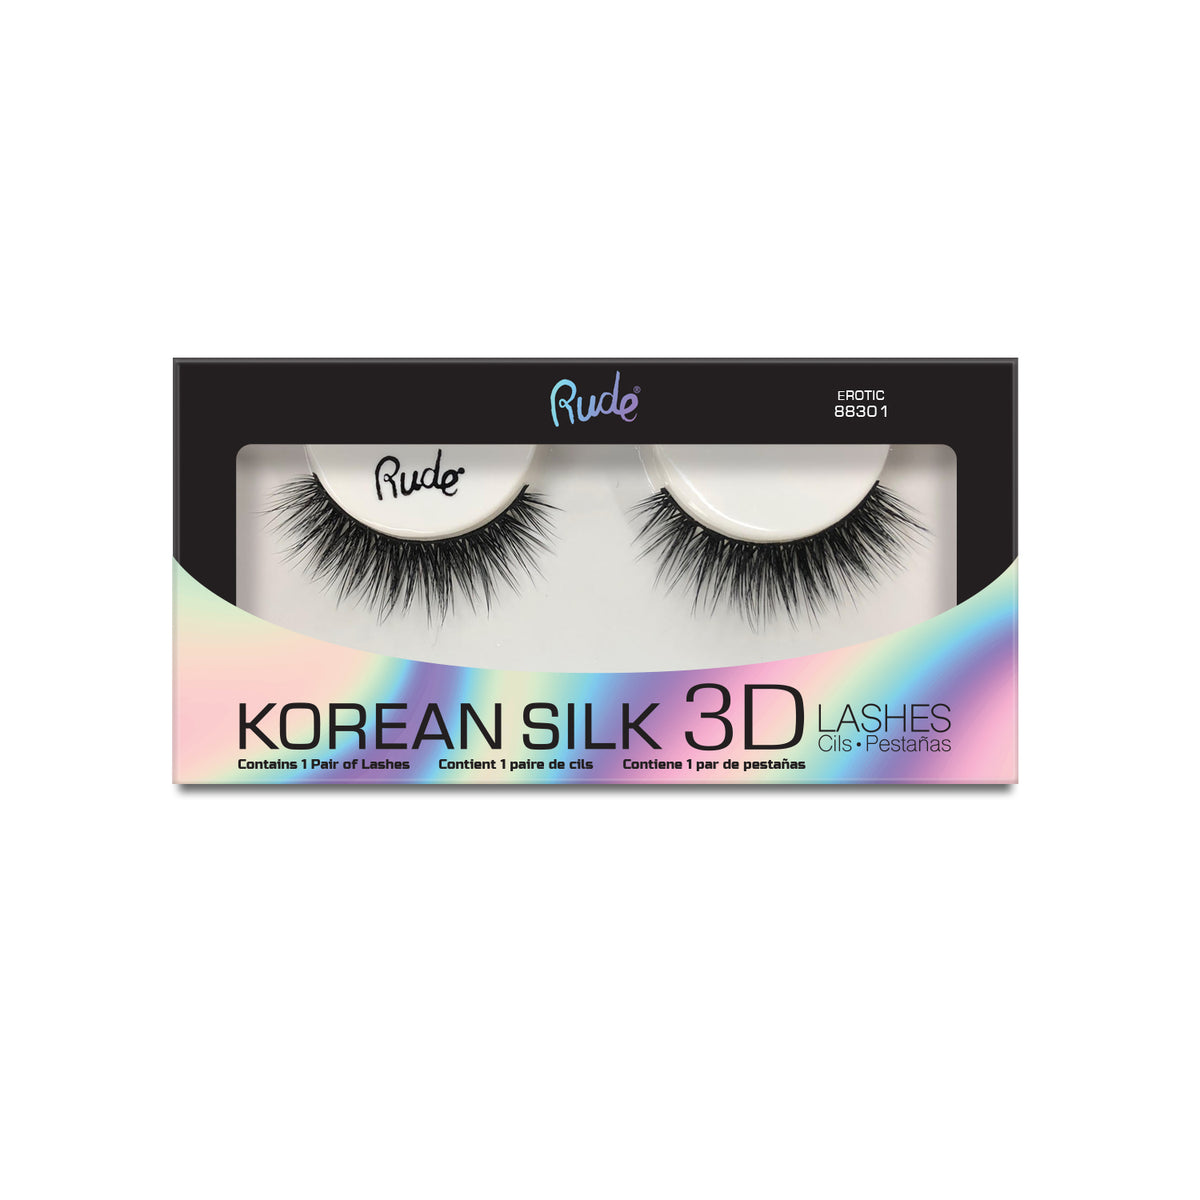 Korean Silk 3D Eyelashes | 3D Silk Lashes Erotic